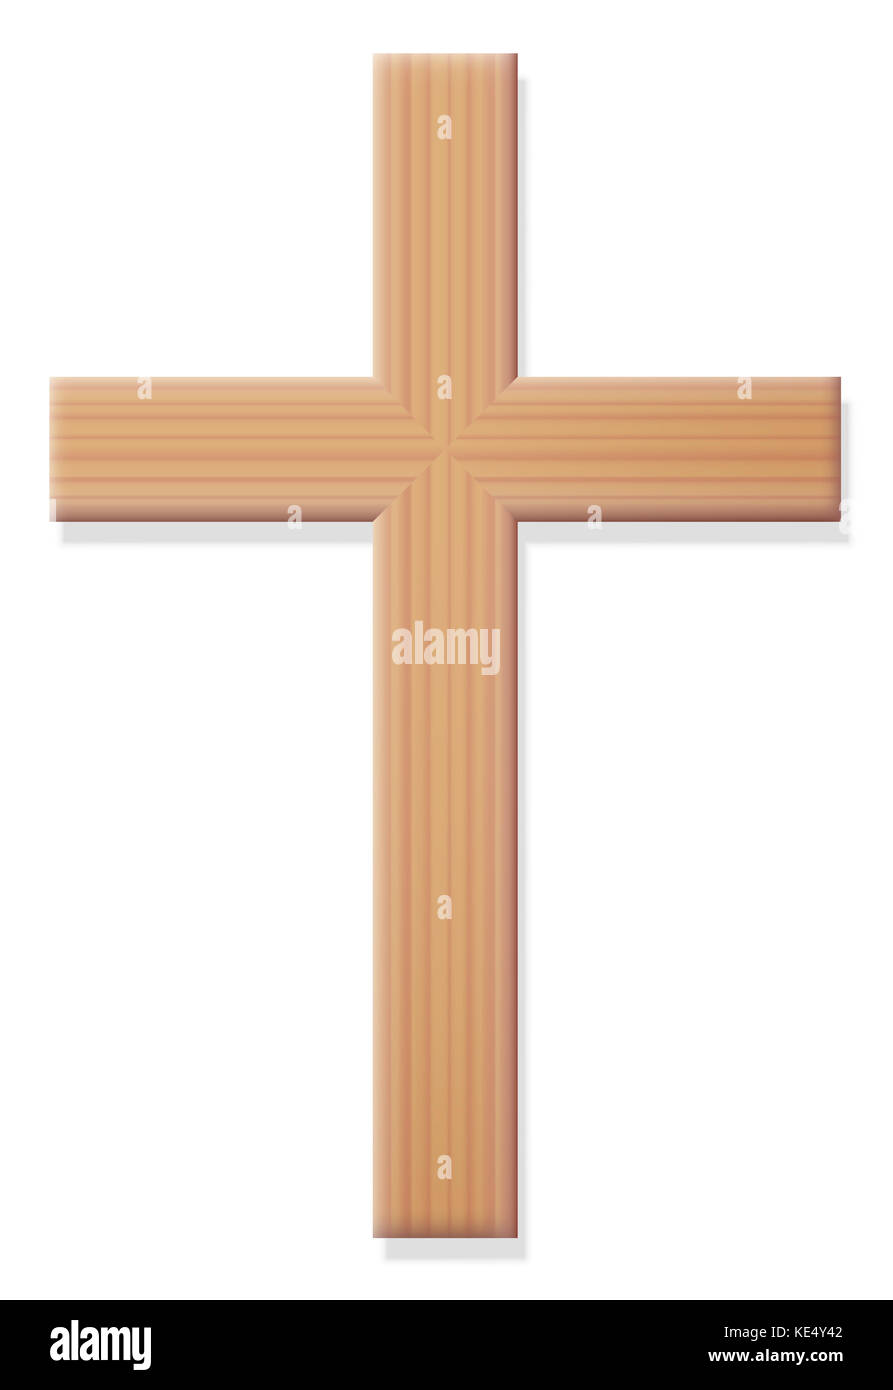 Croix chrétienne en bois, symbole religieux du christianisme - ordinaires, simples, de style rustique, vue de face. Banque D'Images